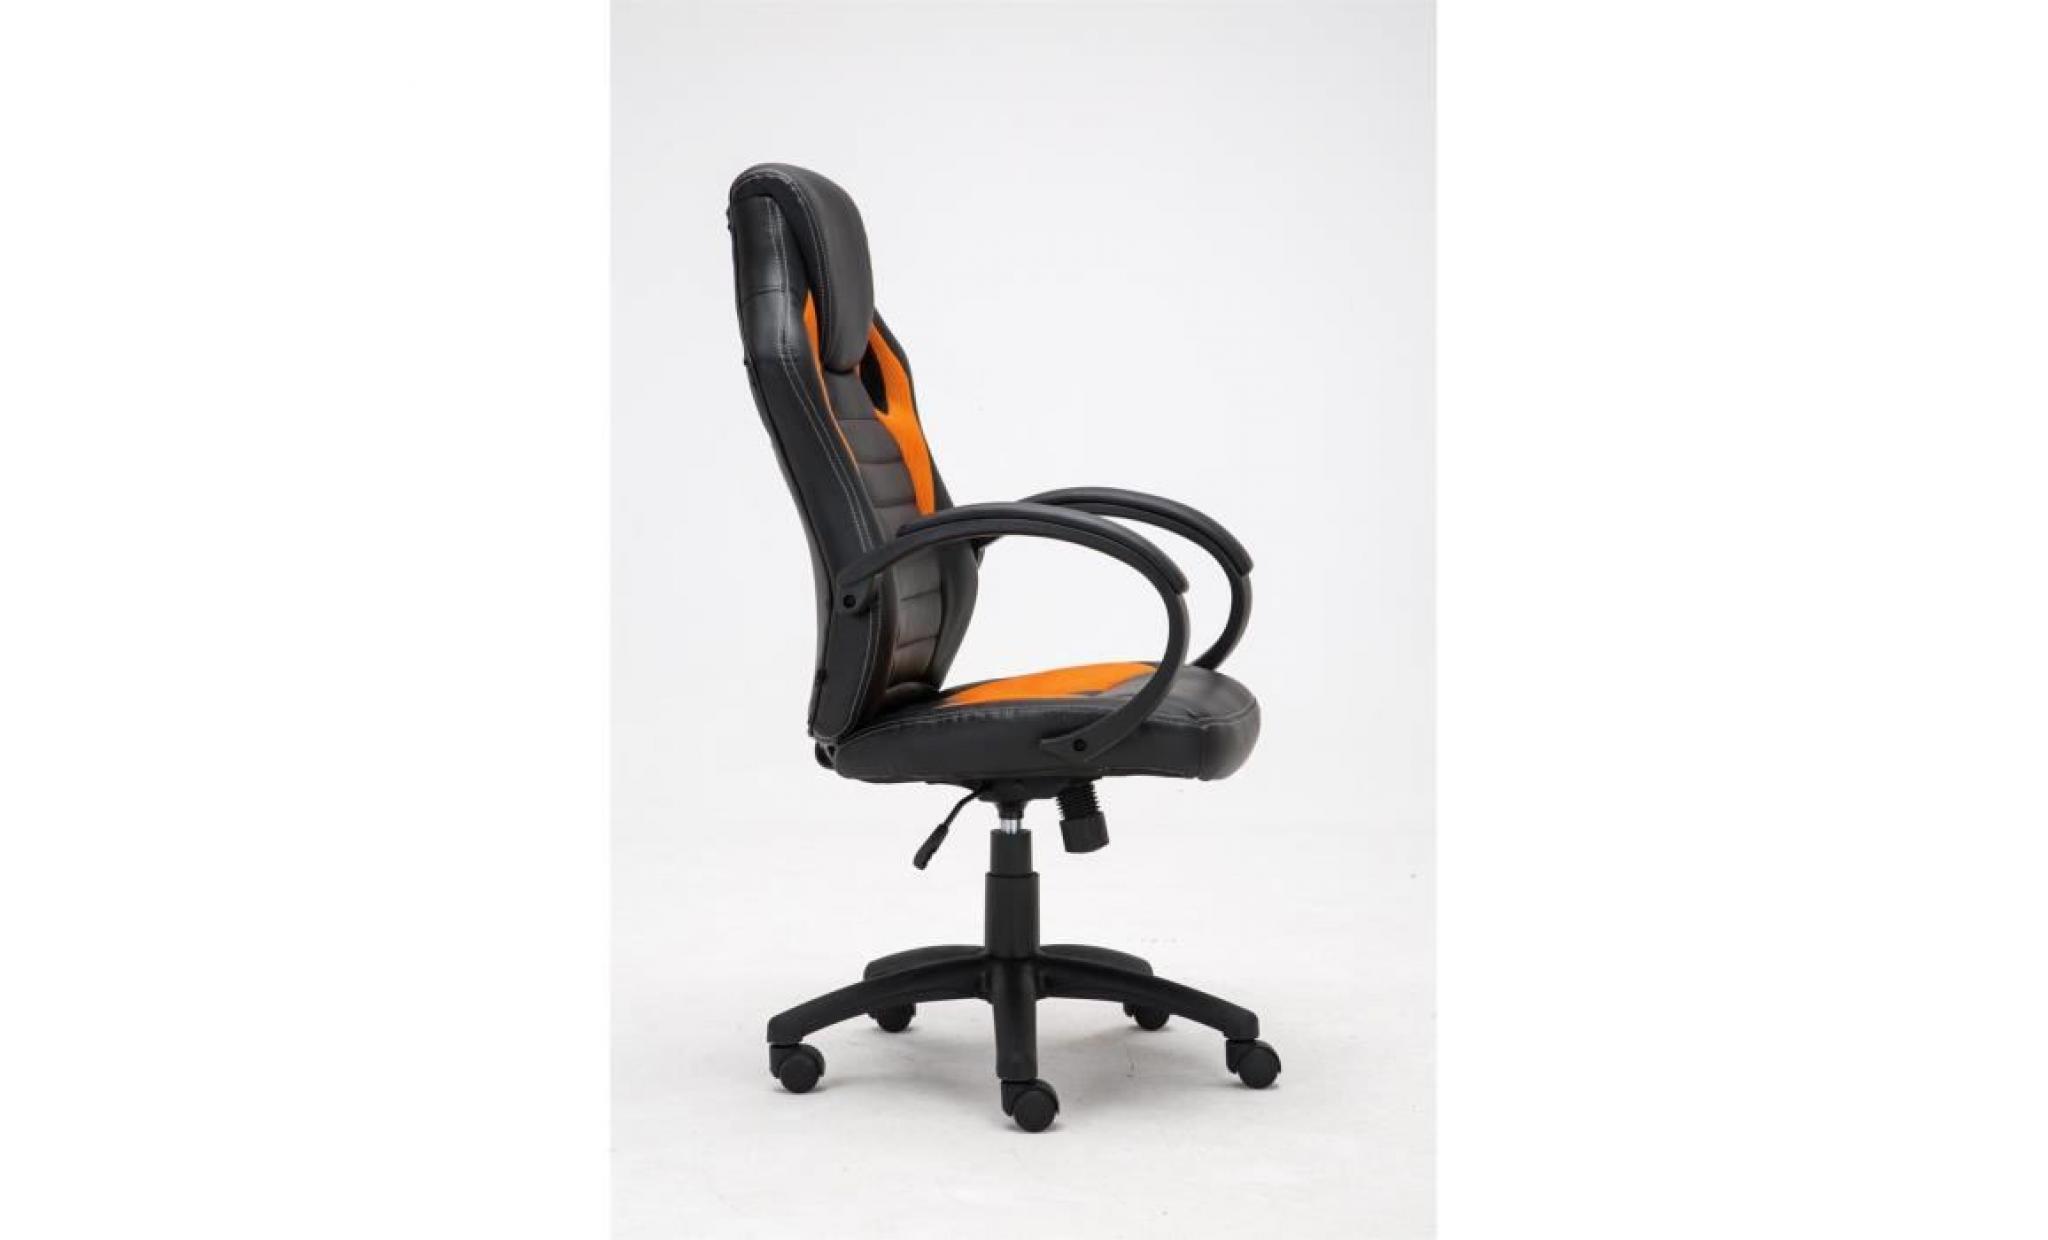 clp fauteuil de bureau speed, chaise bureau avec siège baquet ajustable en hauteur de luxe, revêtement en pu, 7 couleurs au choix... pas cher